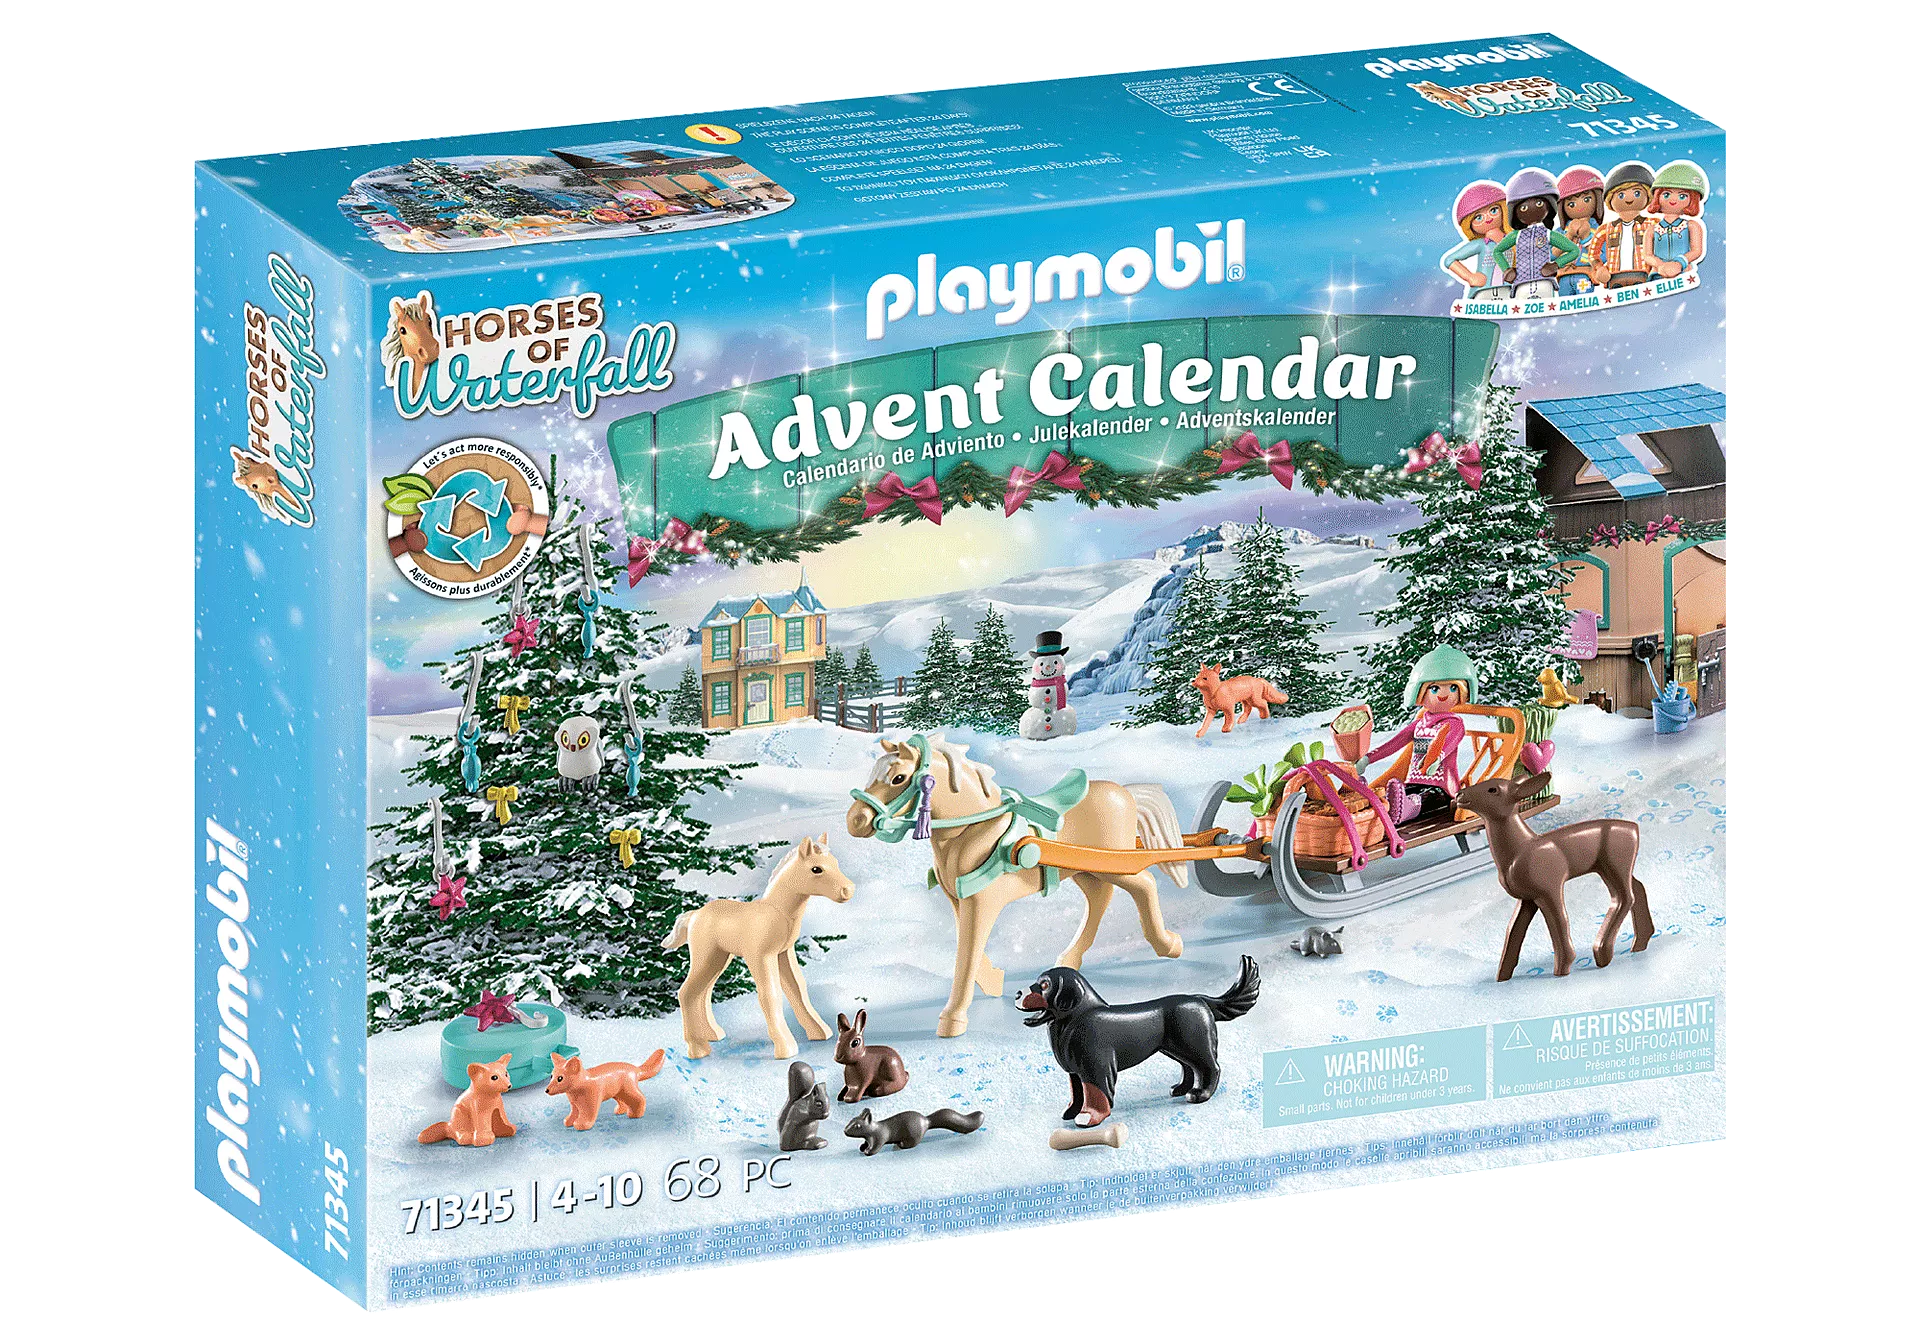 Playmobil Horses Of Waterfall Advent Calendar